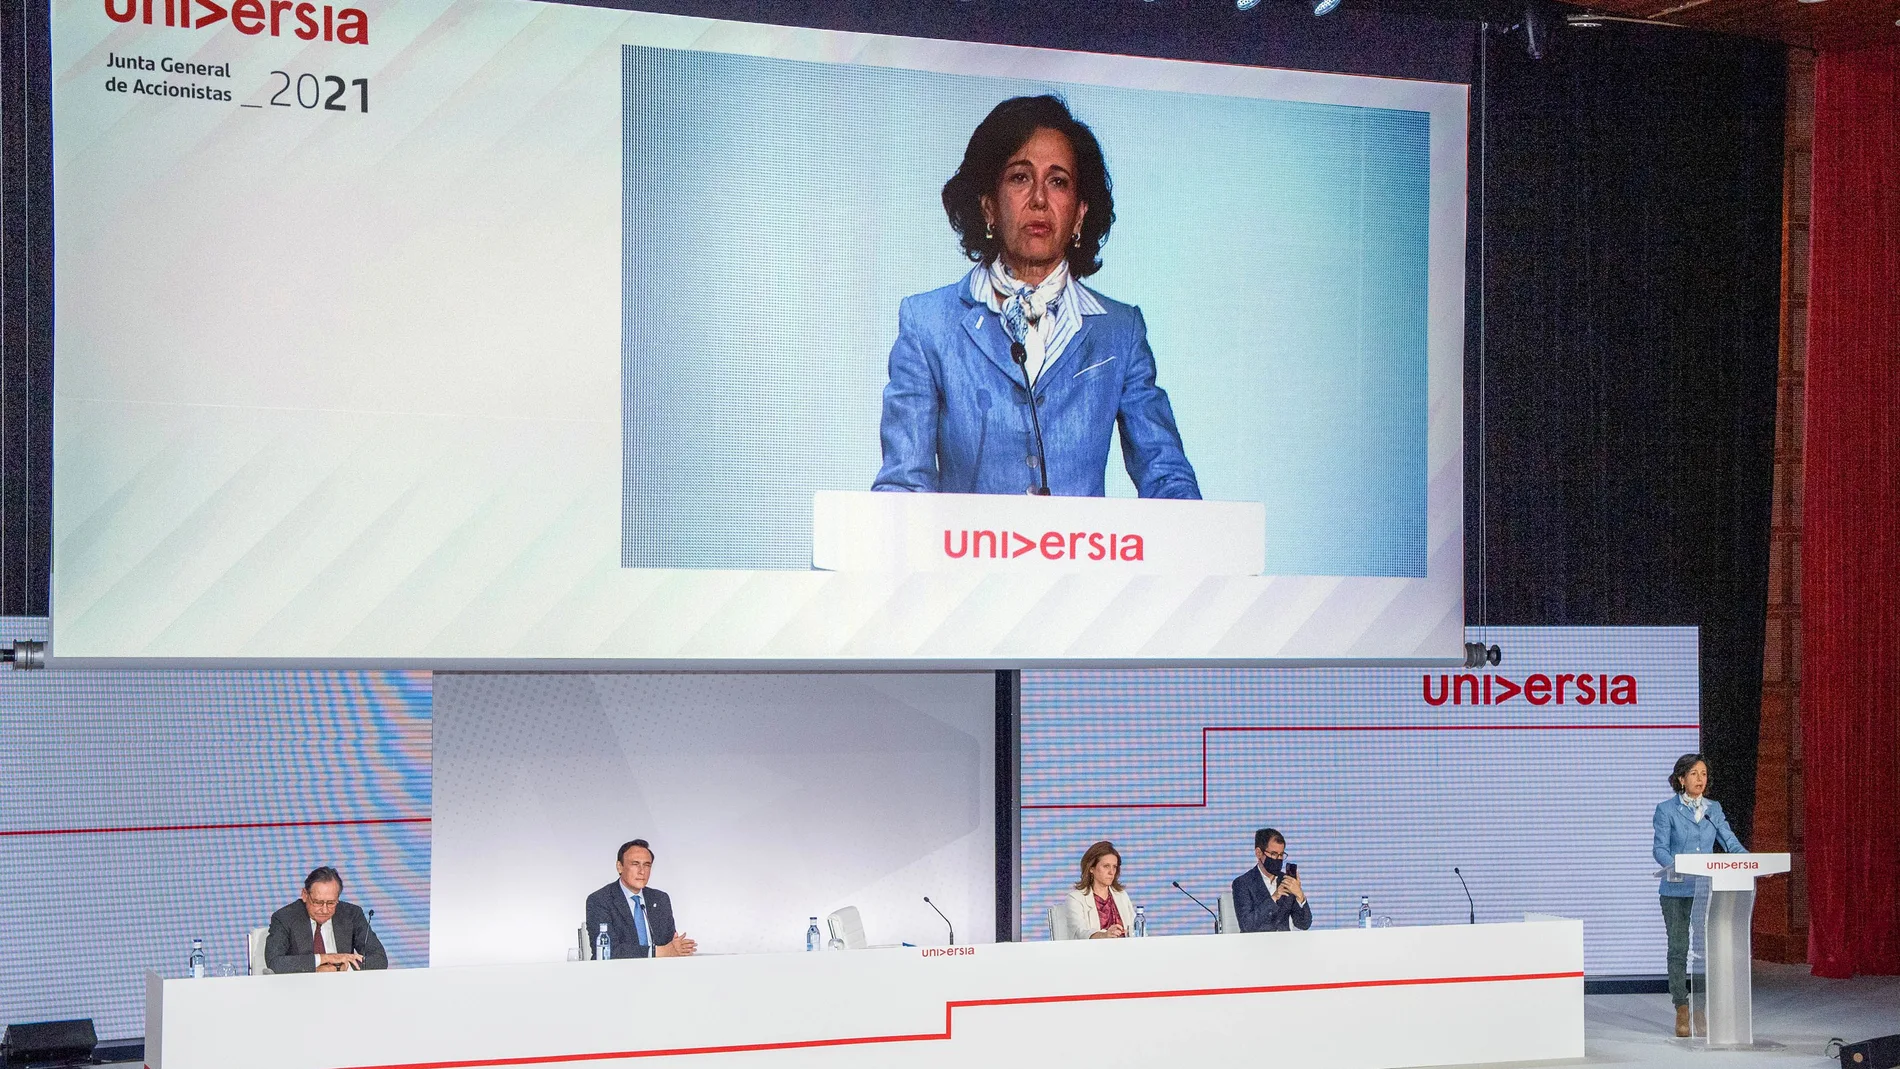 Ana Botín en un momento de la junta general de accionistas de Universia, celebrada hoy